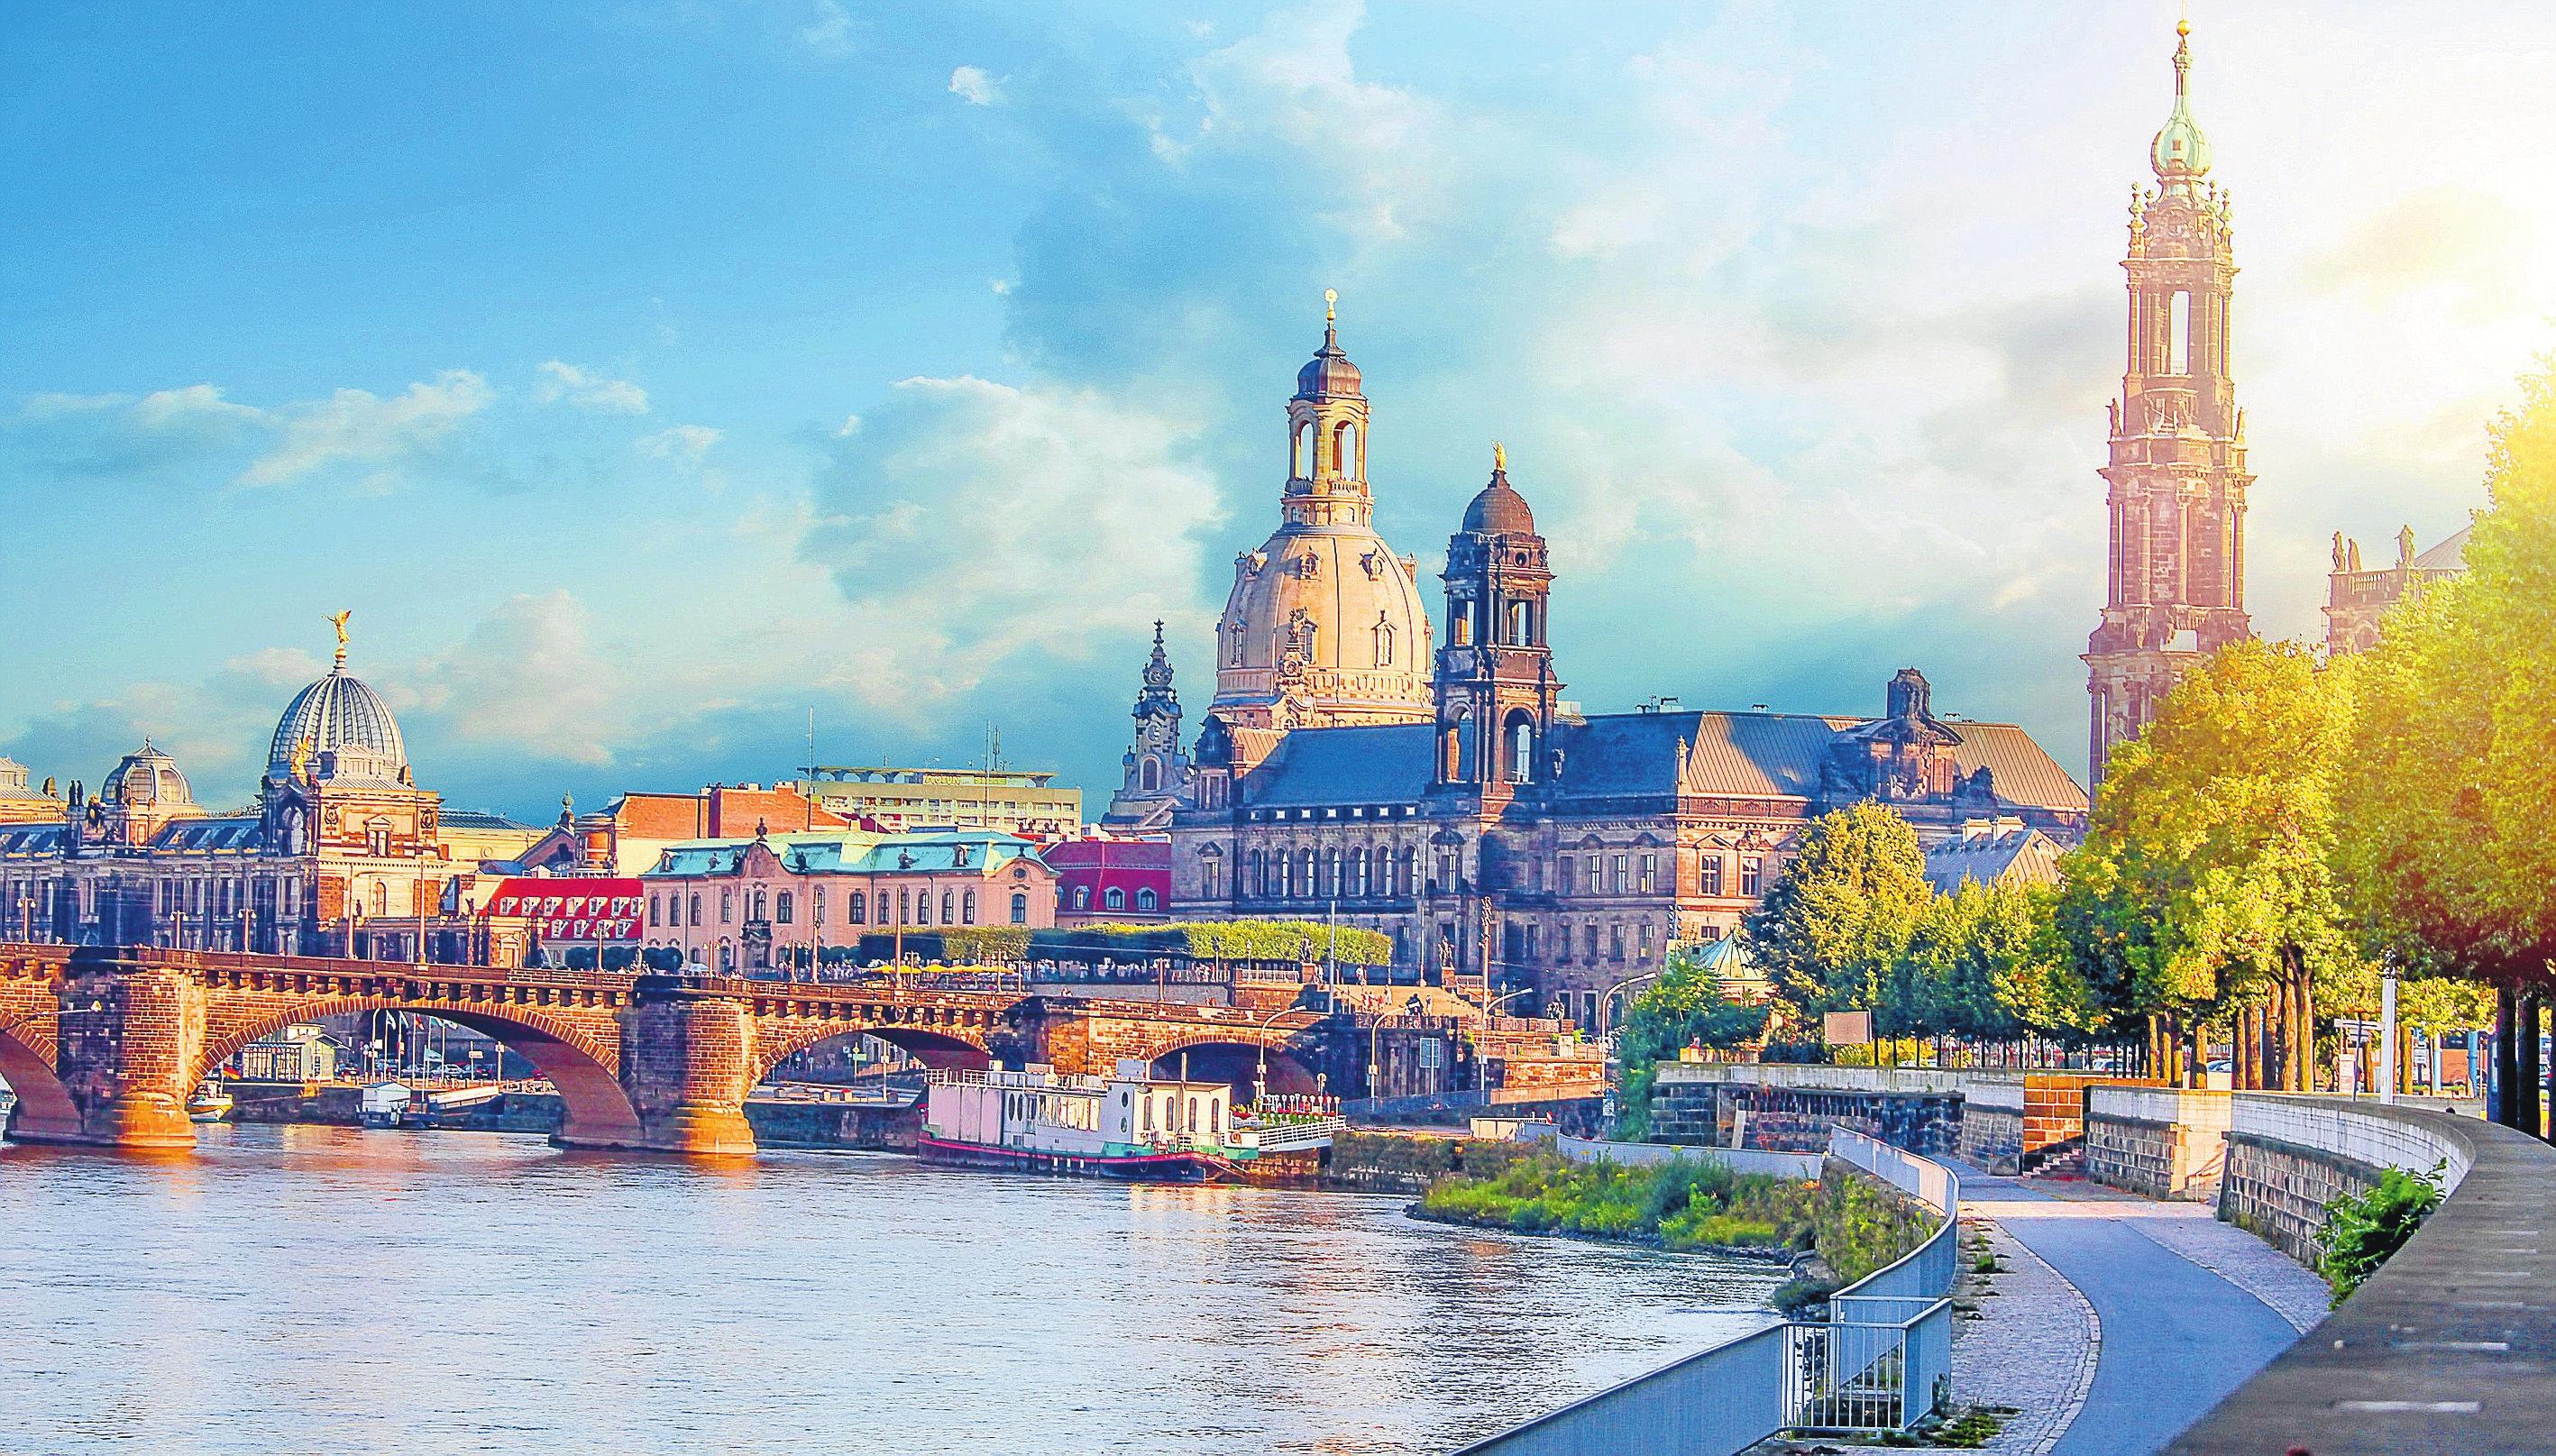 Dresden gehört zu den beliebtesten Städtereisezielen in Deutschland. Foto: djd/www.kurzurlaub.de/artmim - stock.adobe.com